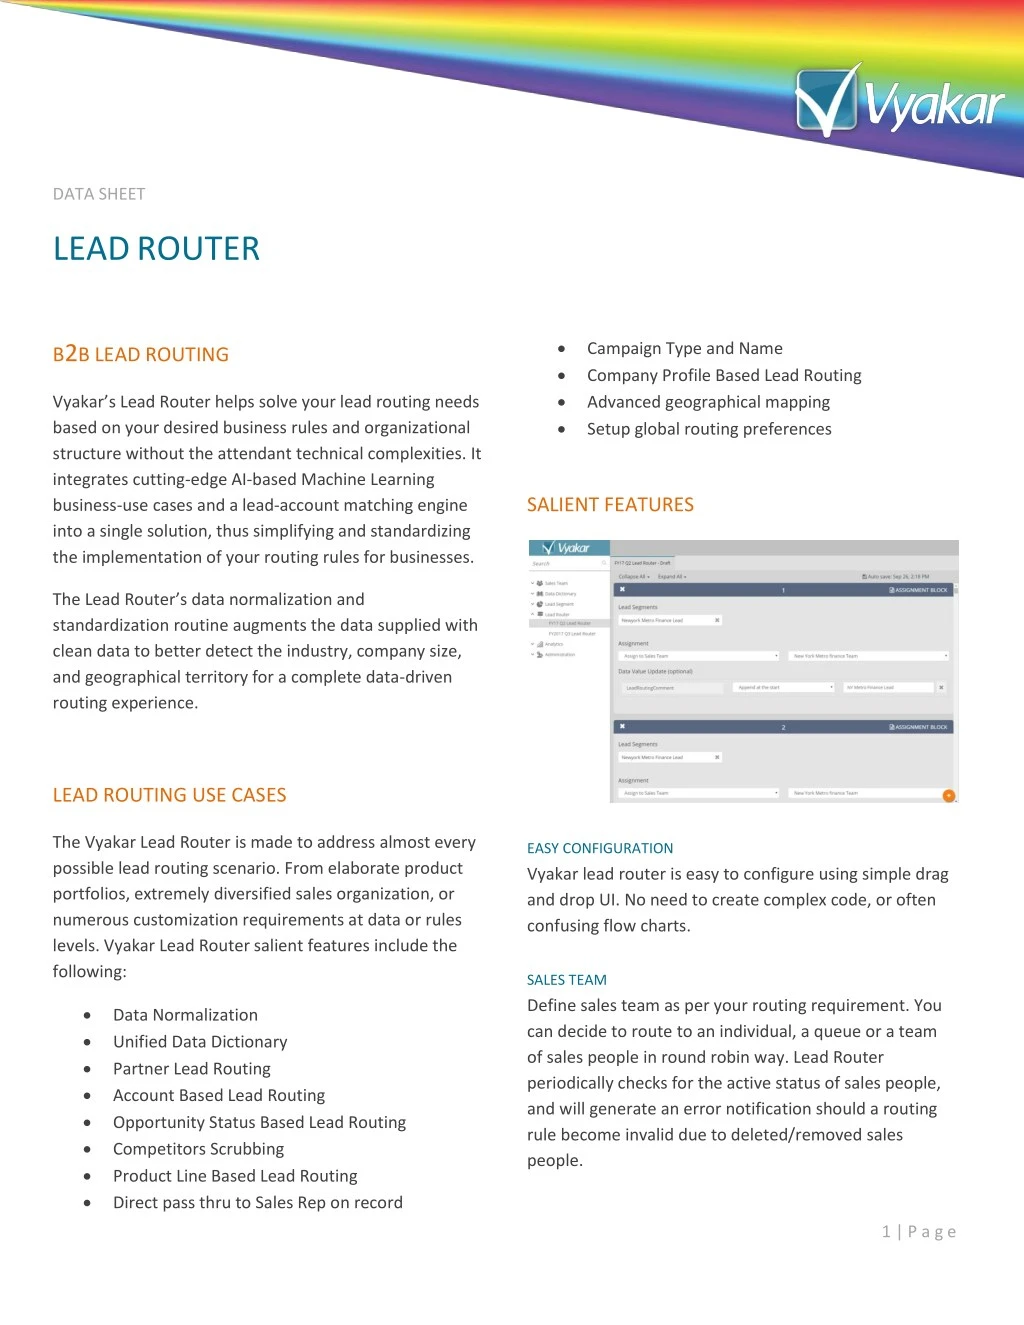 Lead Management Flow Chart